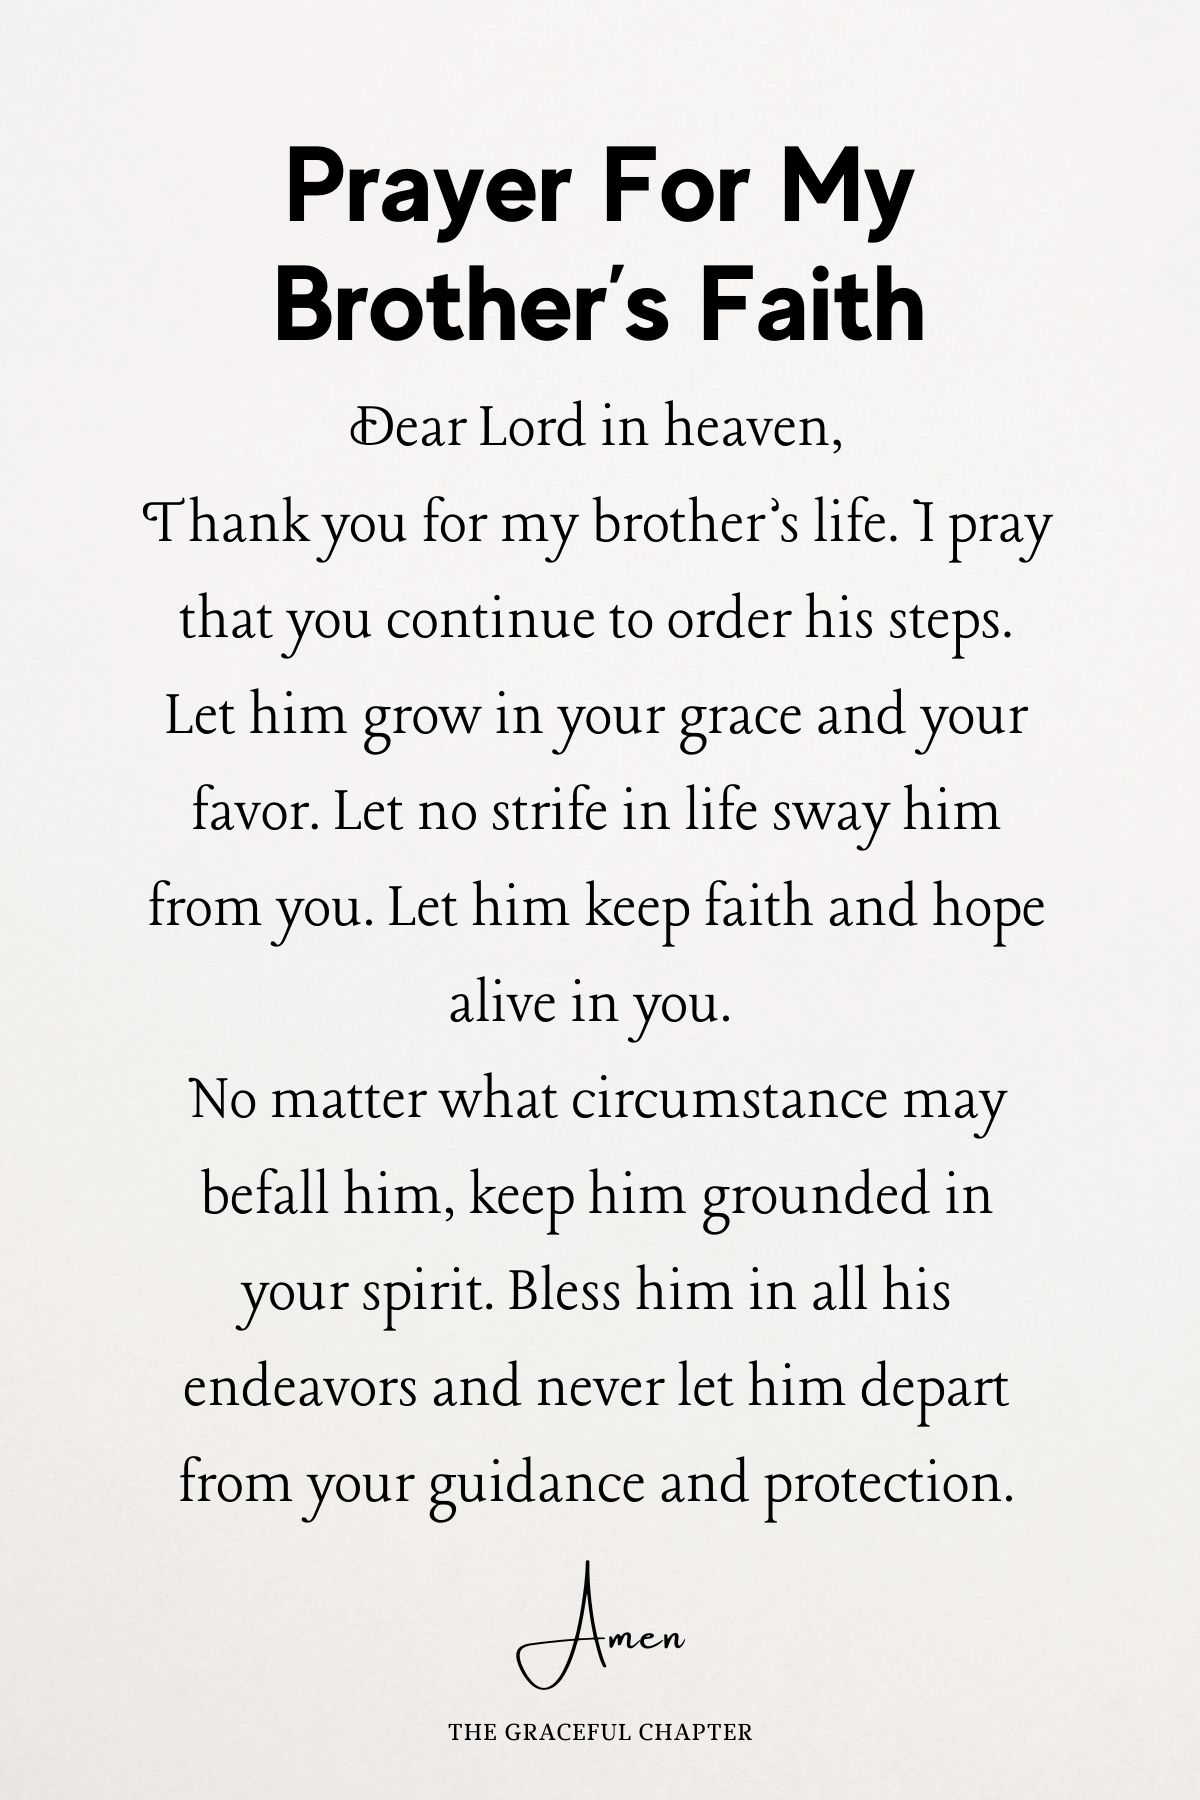 Prayer for my brother’s faith